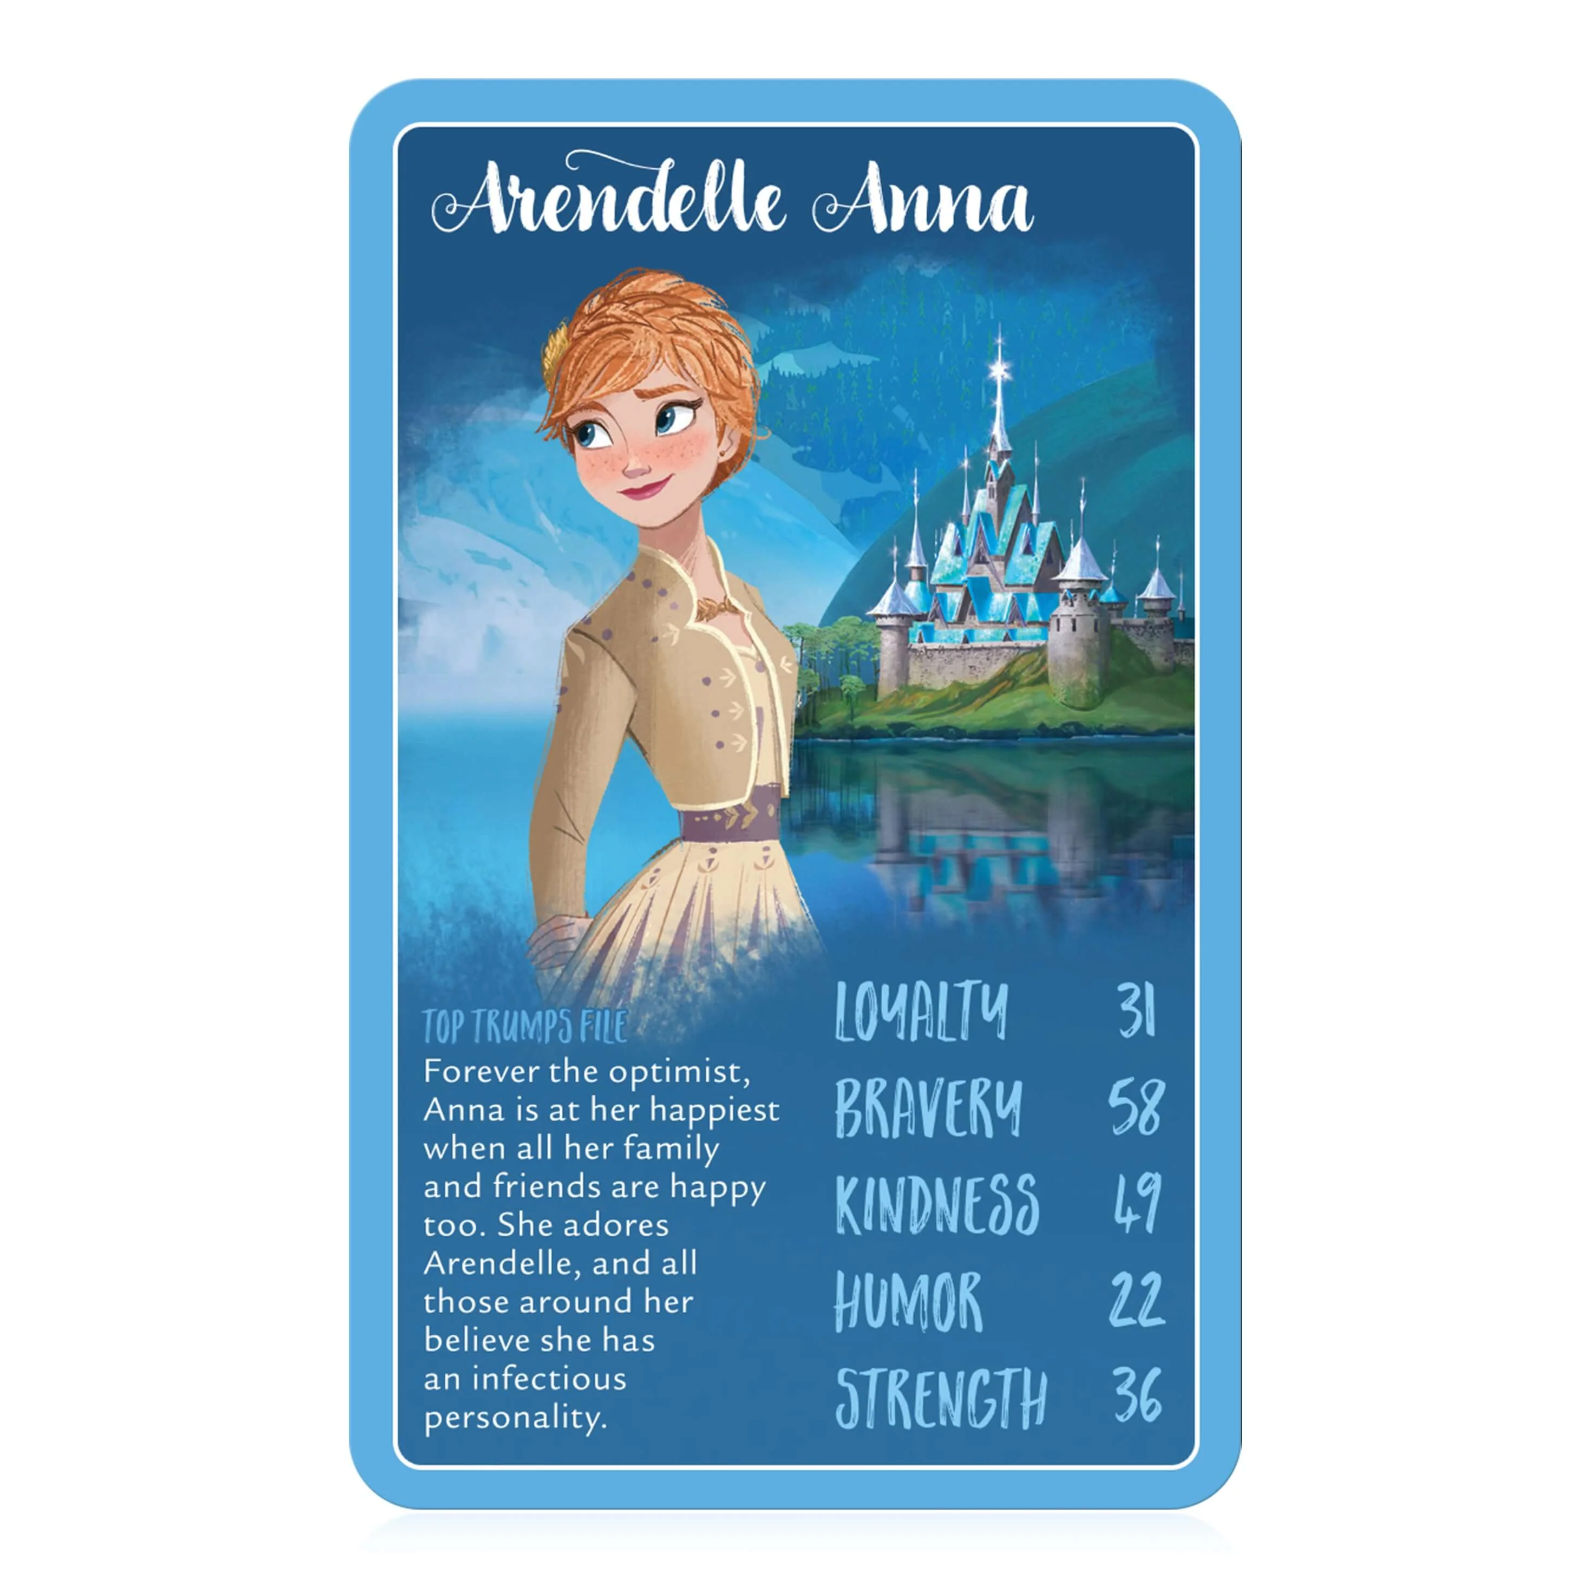 Disney Frozen 2 Top Trumps Card Game